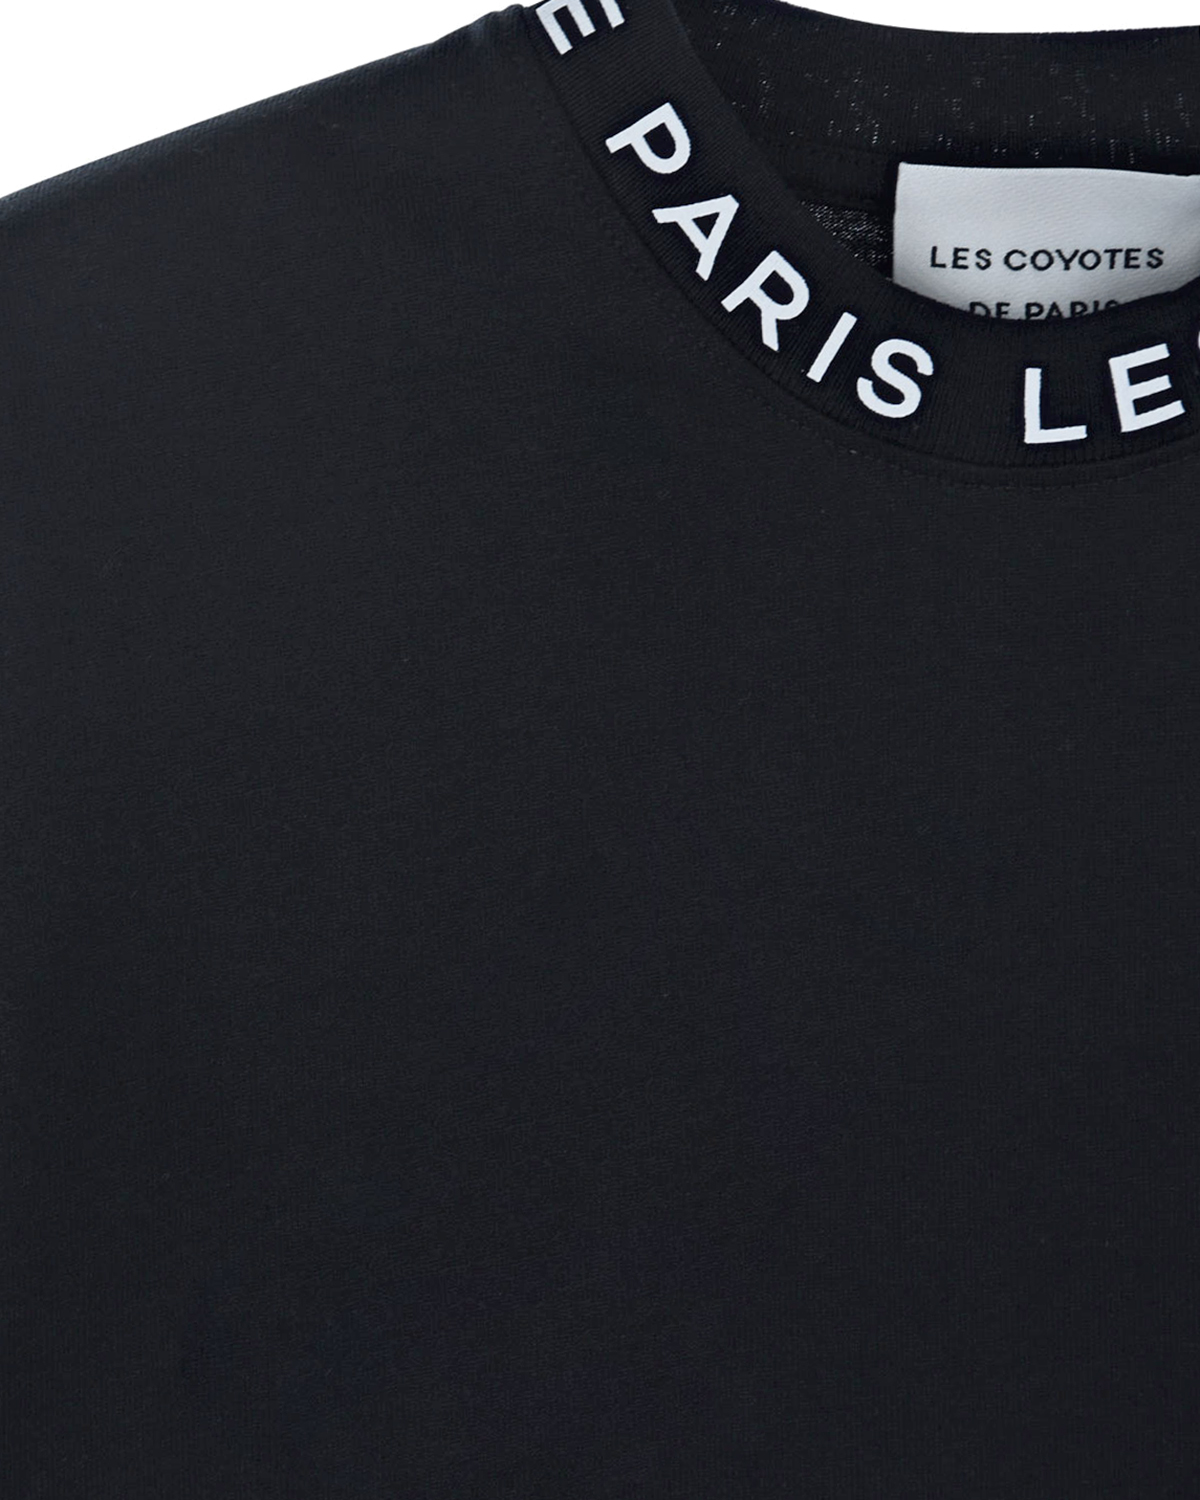 Черный свтишот с белым логотипом Les Coyotes de Paris детский, размер 152 - фото 3